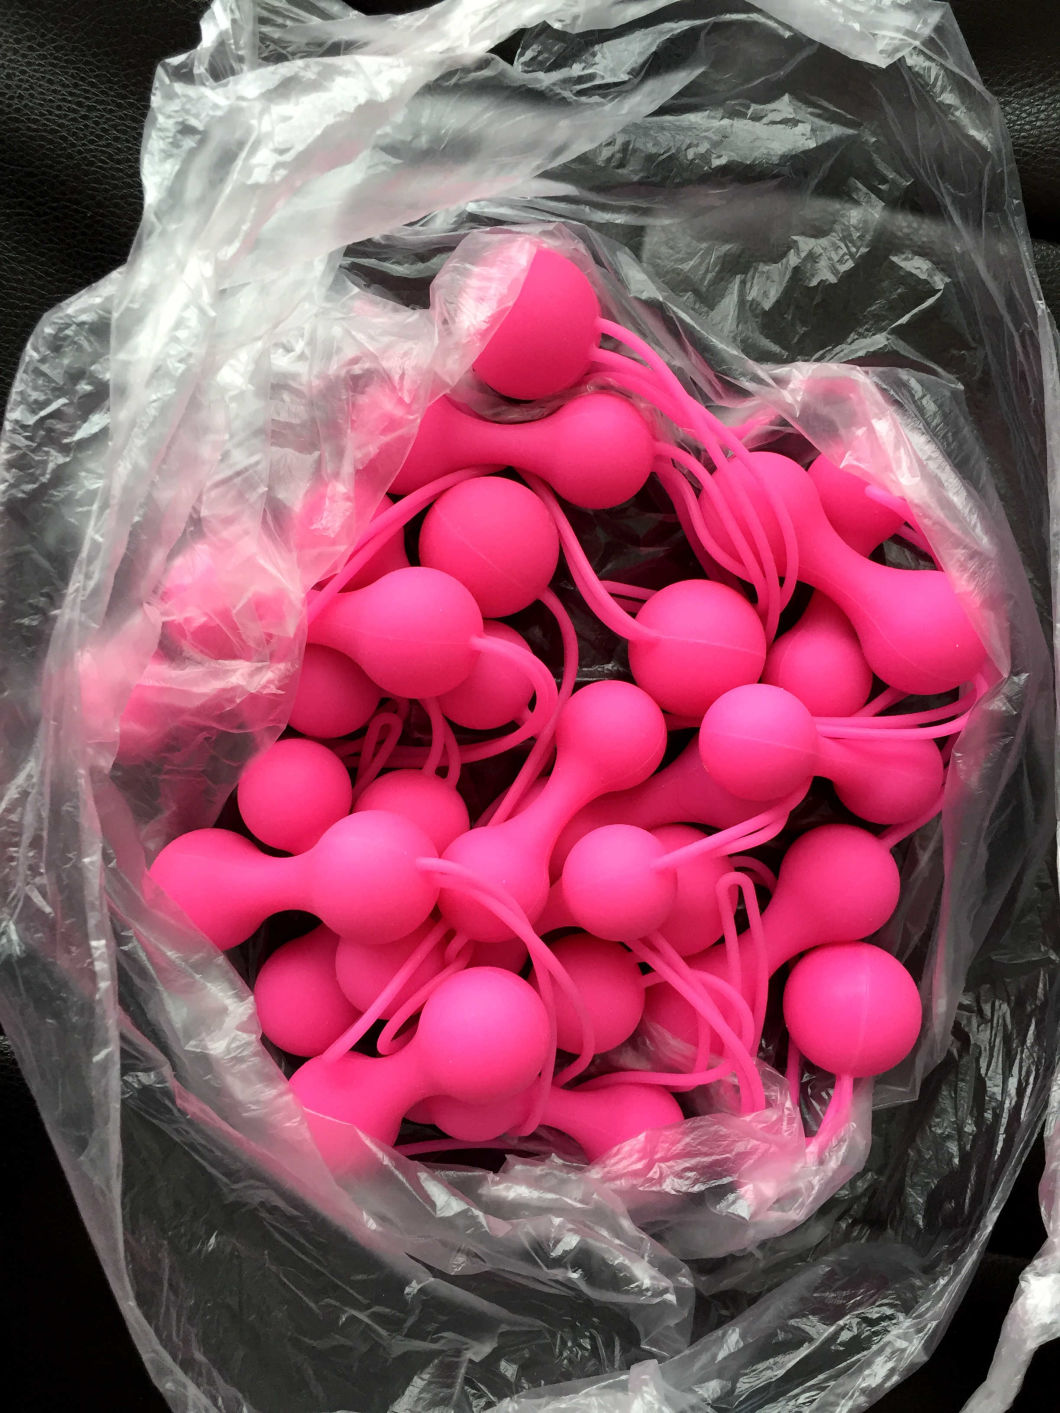 Custom Medical Grade Silicone Rubber Love Balls for Virgina Exercise, Virgina Tighter